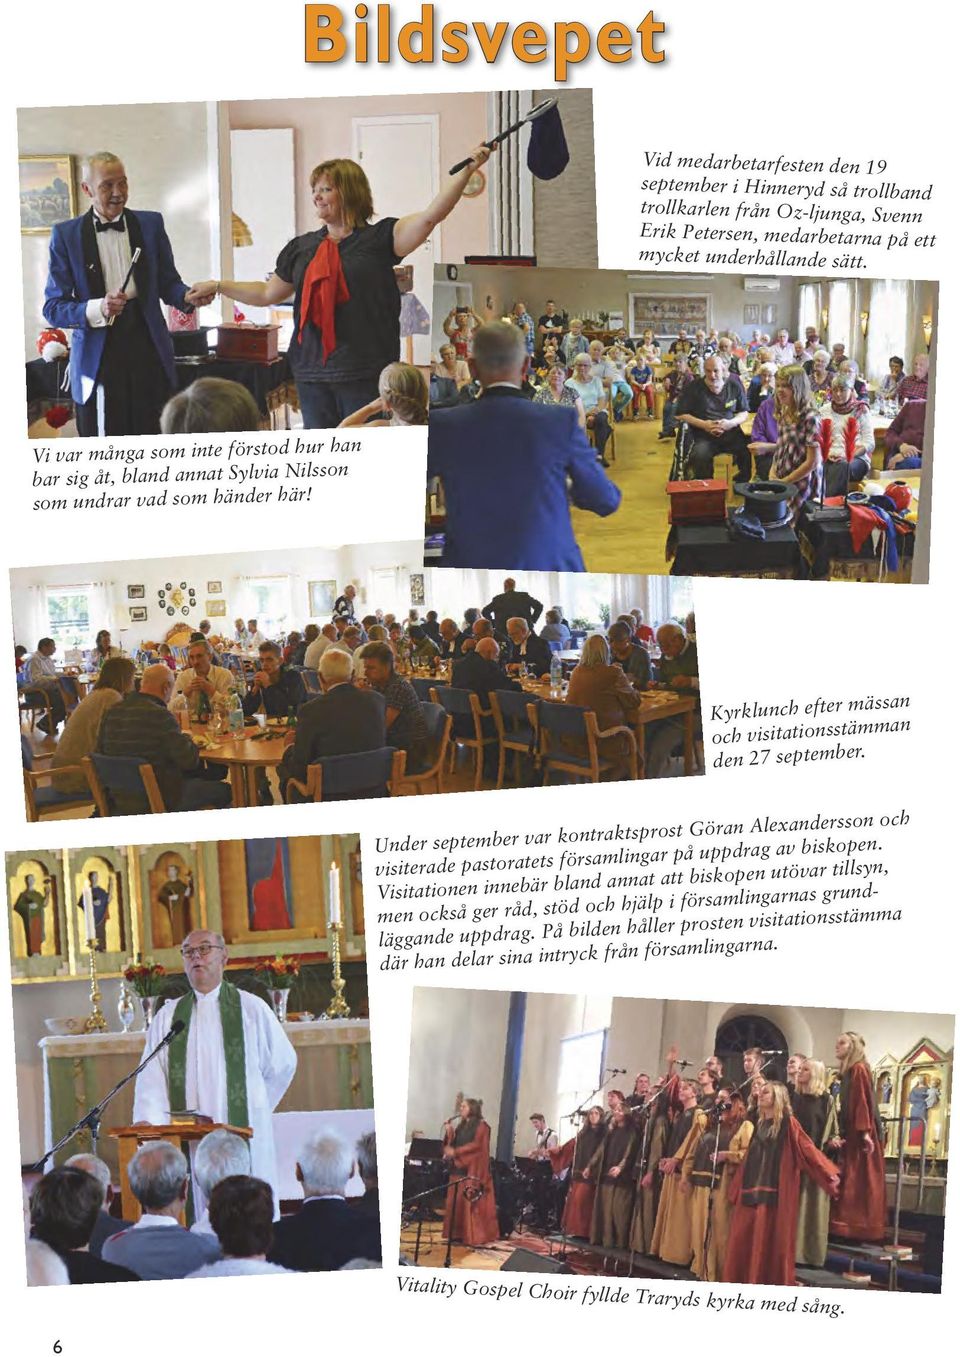 Under september var kontraktsprost Göran Alexandersson och visiterade pastoratets församlingar på uppdrag av biskopen.